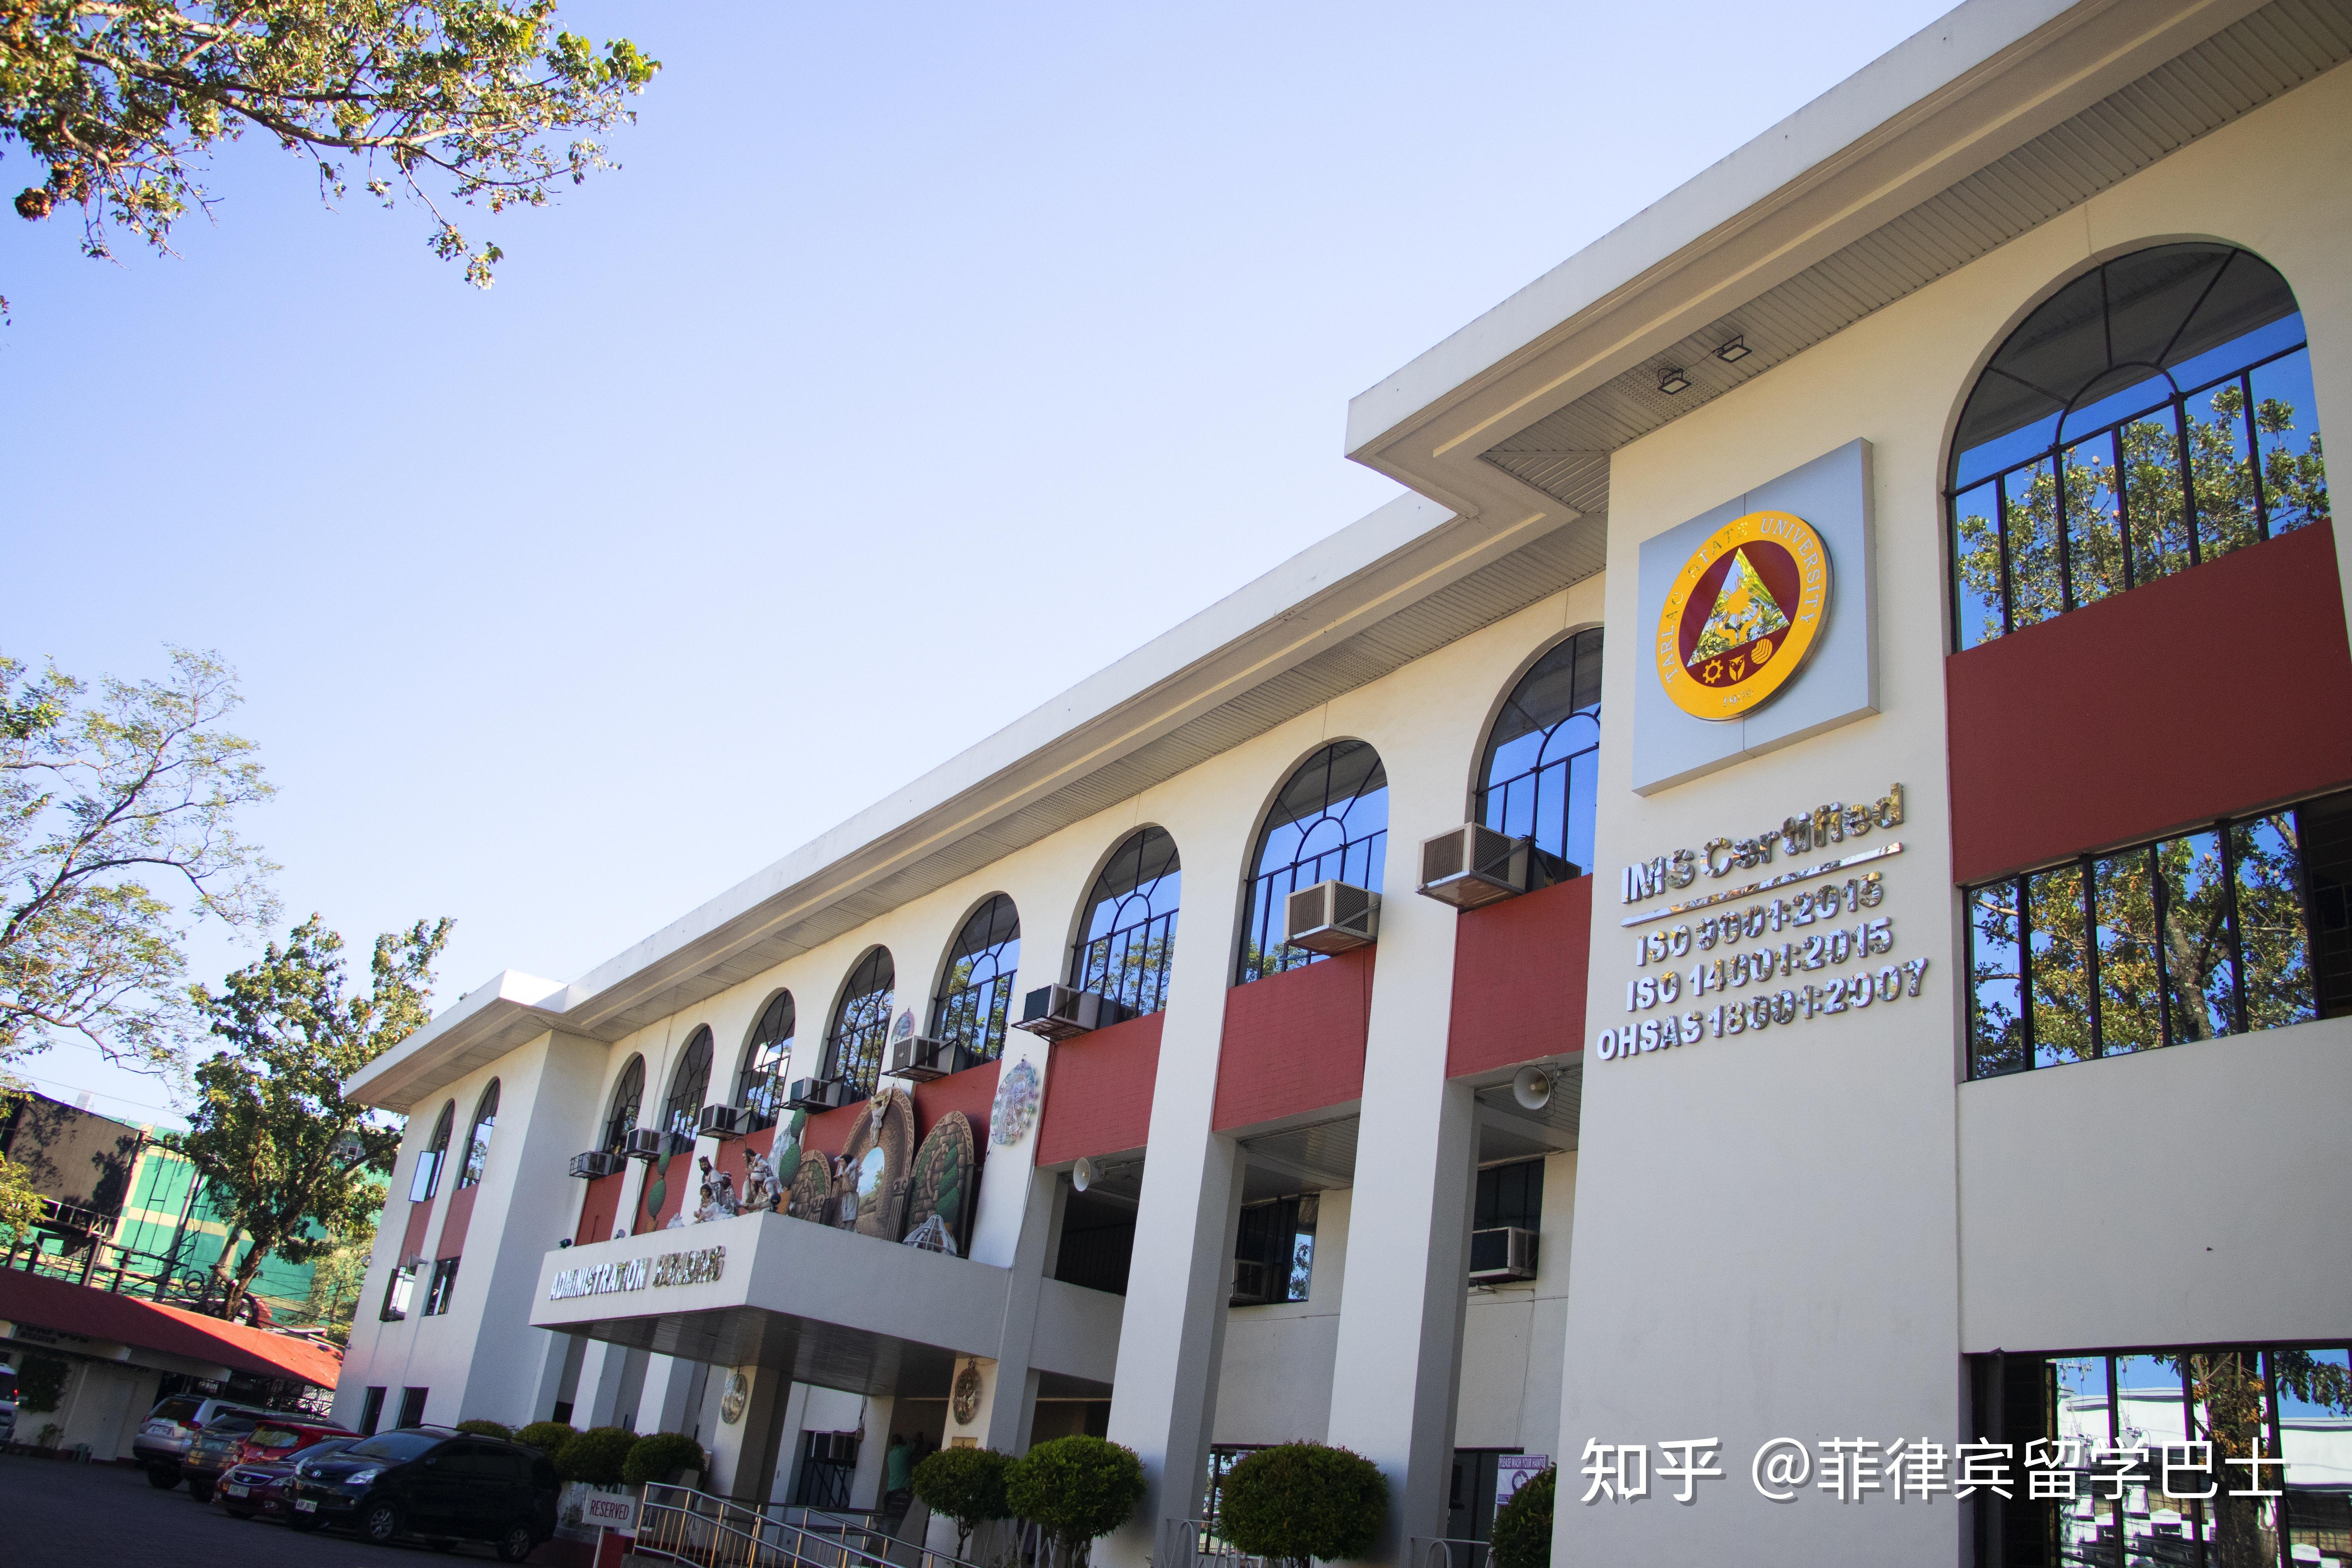 菲律宾大学菲律宾排名第一的综合性国立大学,菲律宾四大高校中唯一一